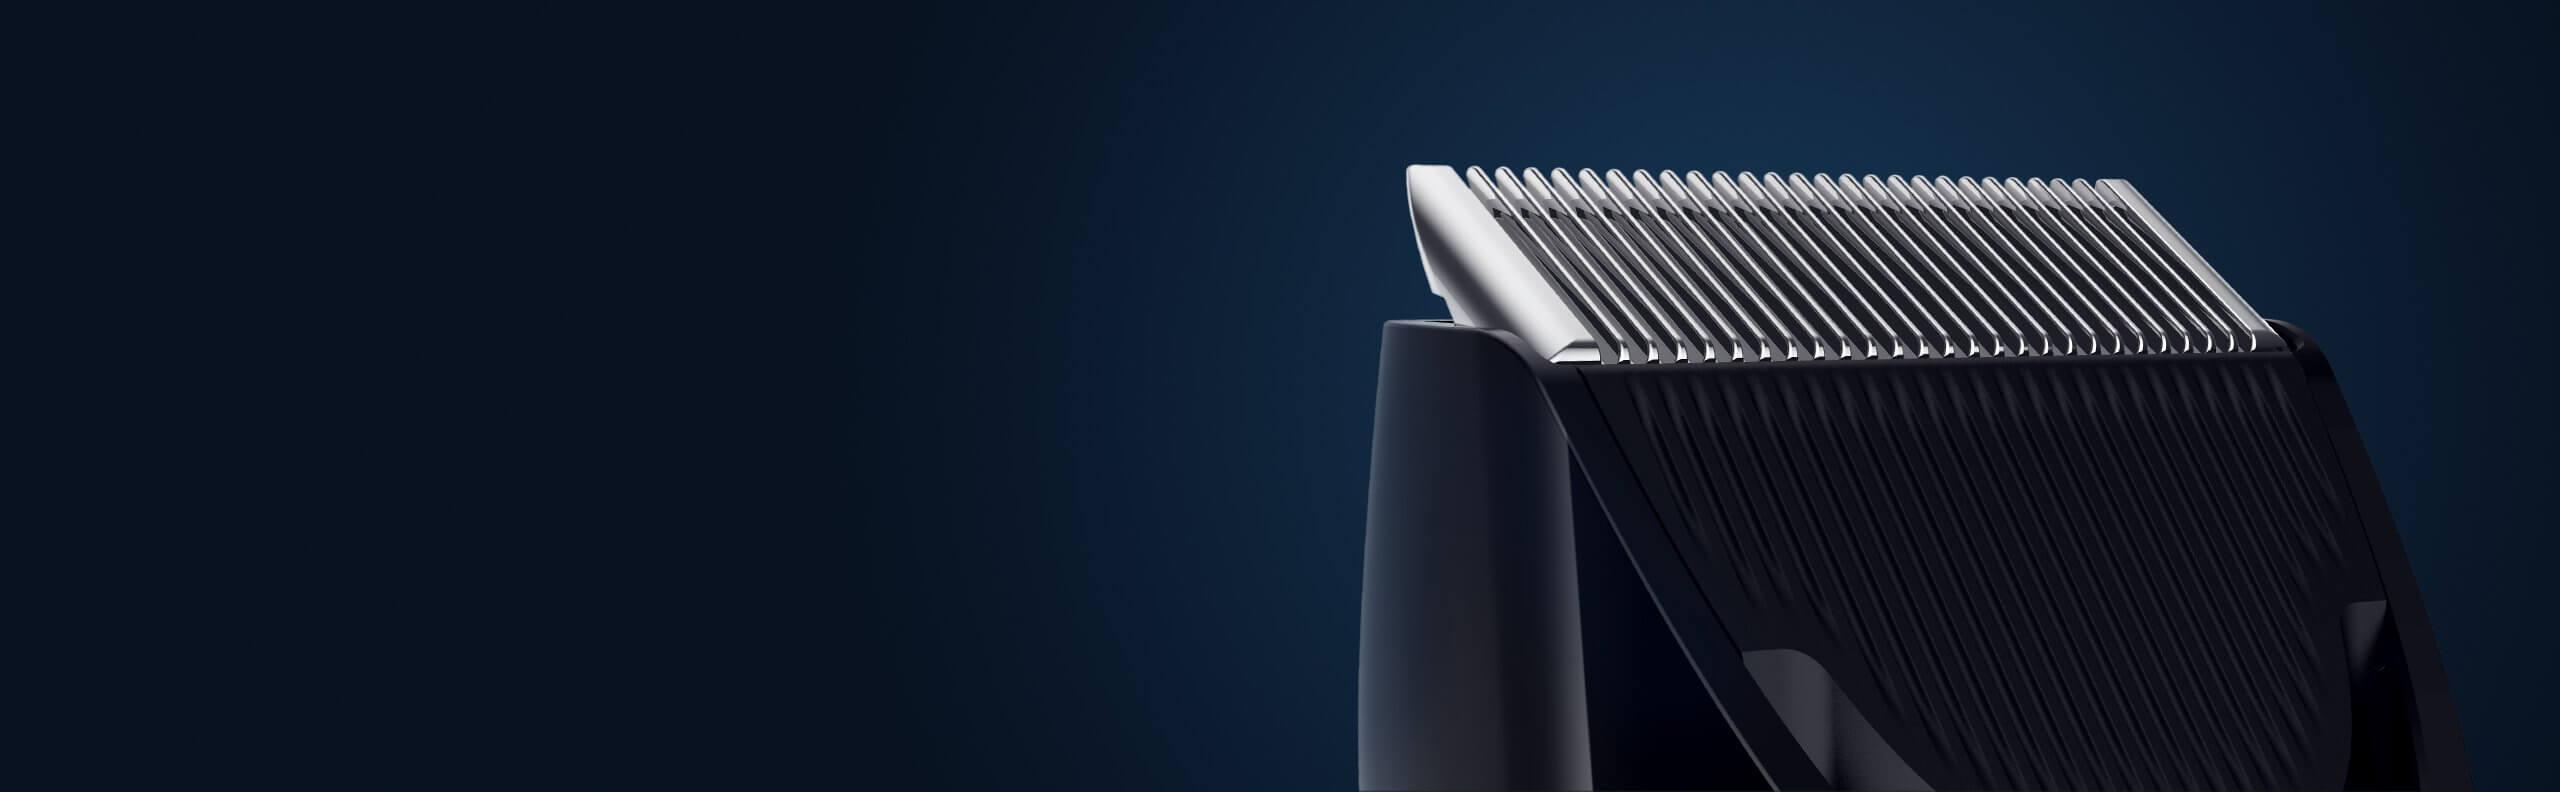 Xiaomi Hair Clipper - maszynka do strzyżenia, która sama przypomni Ci o konieczności konserwacji